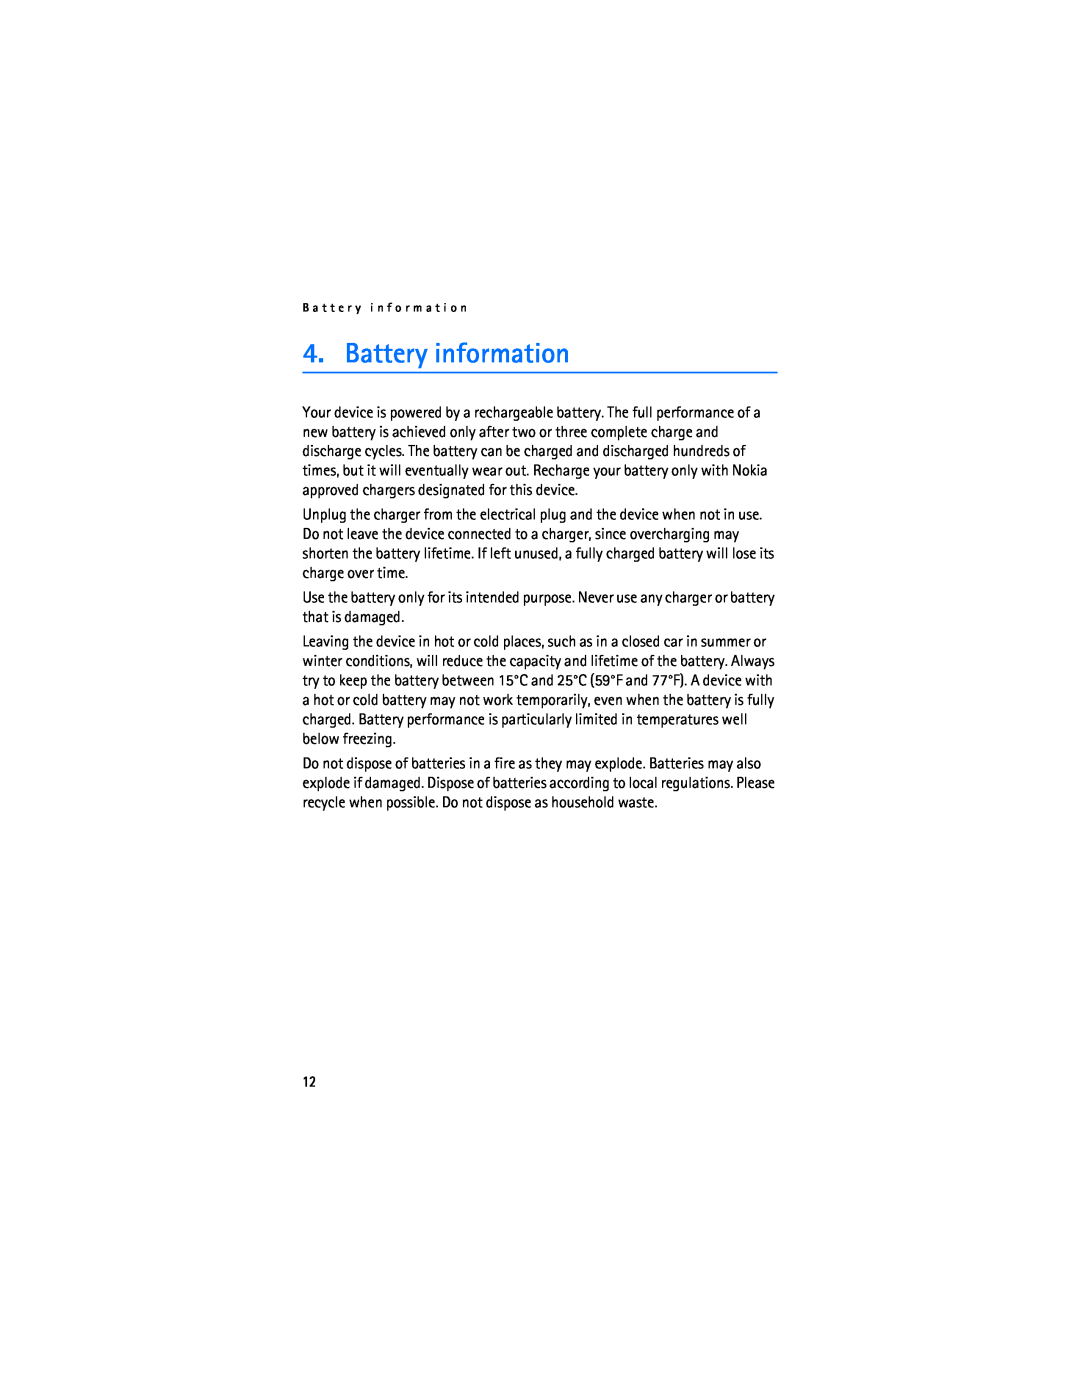 Nokia BH-500 manual Battery information, B a t t e r y i n f o r m a t i o n 